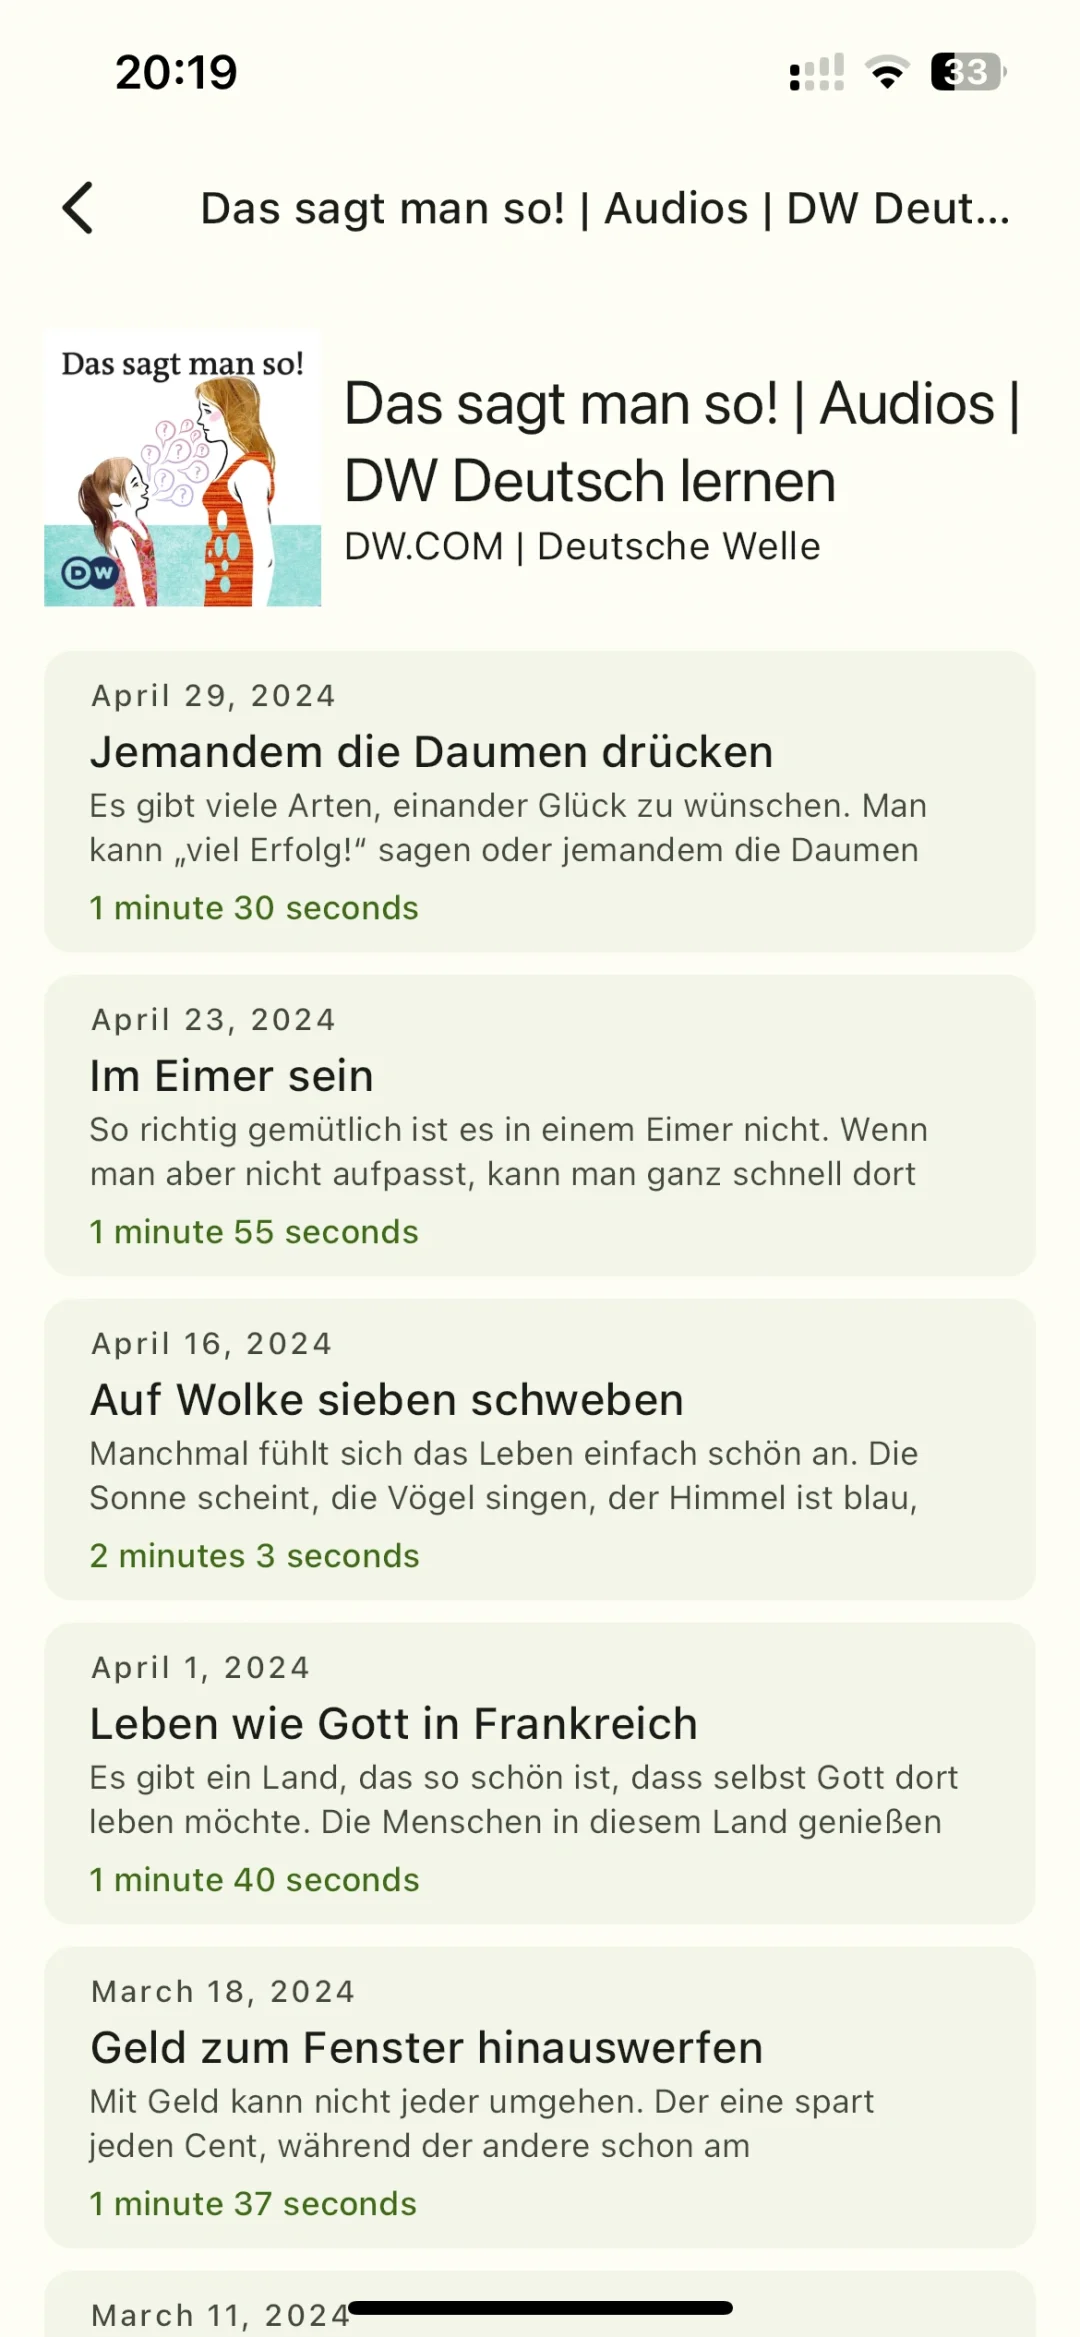 给大家推荐一个最近在用的德语小软件